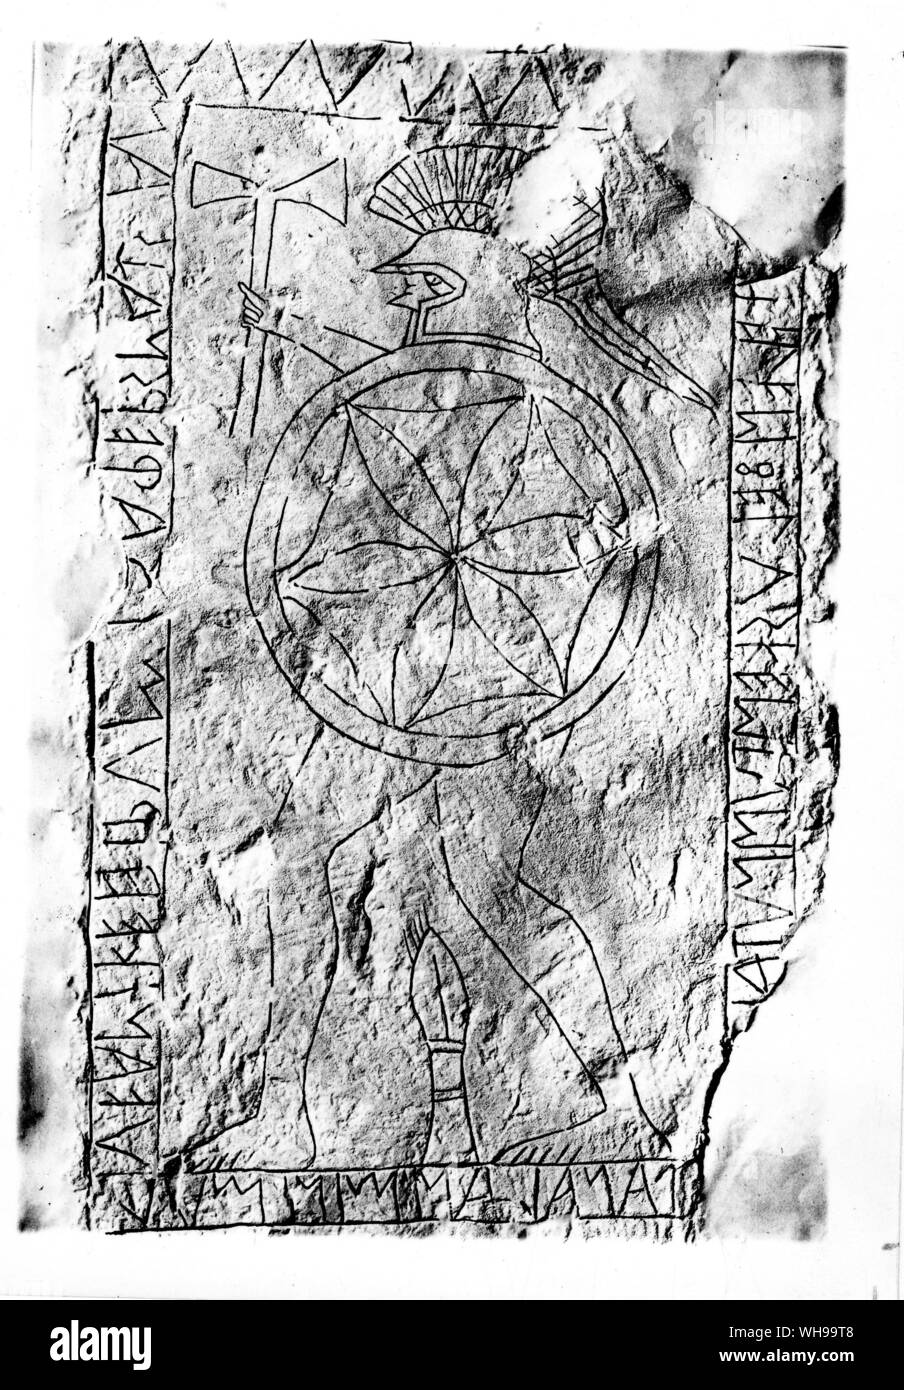 Italien / frühen Zivilisation / Etrusker: Grabstein eines etruskischen Kriegers namens Avele Feluske. Er ist dargestellt mit einem Double-bladed Axt bewaffnet. Die Inschrift ist in der antiken Etrusker. Stockfoto